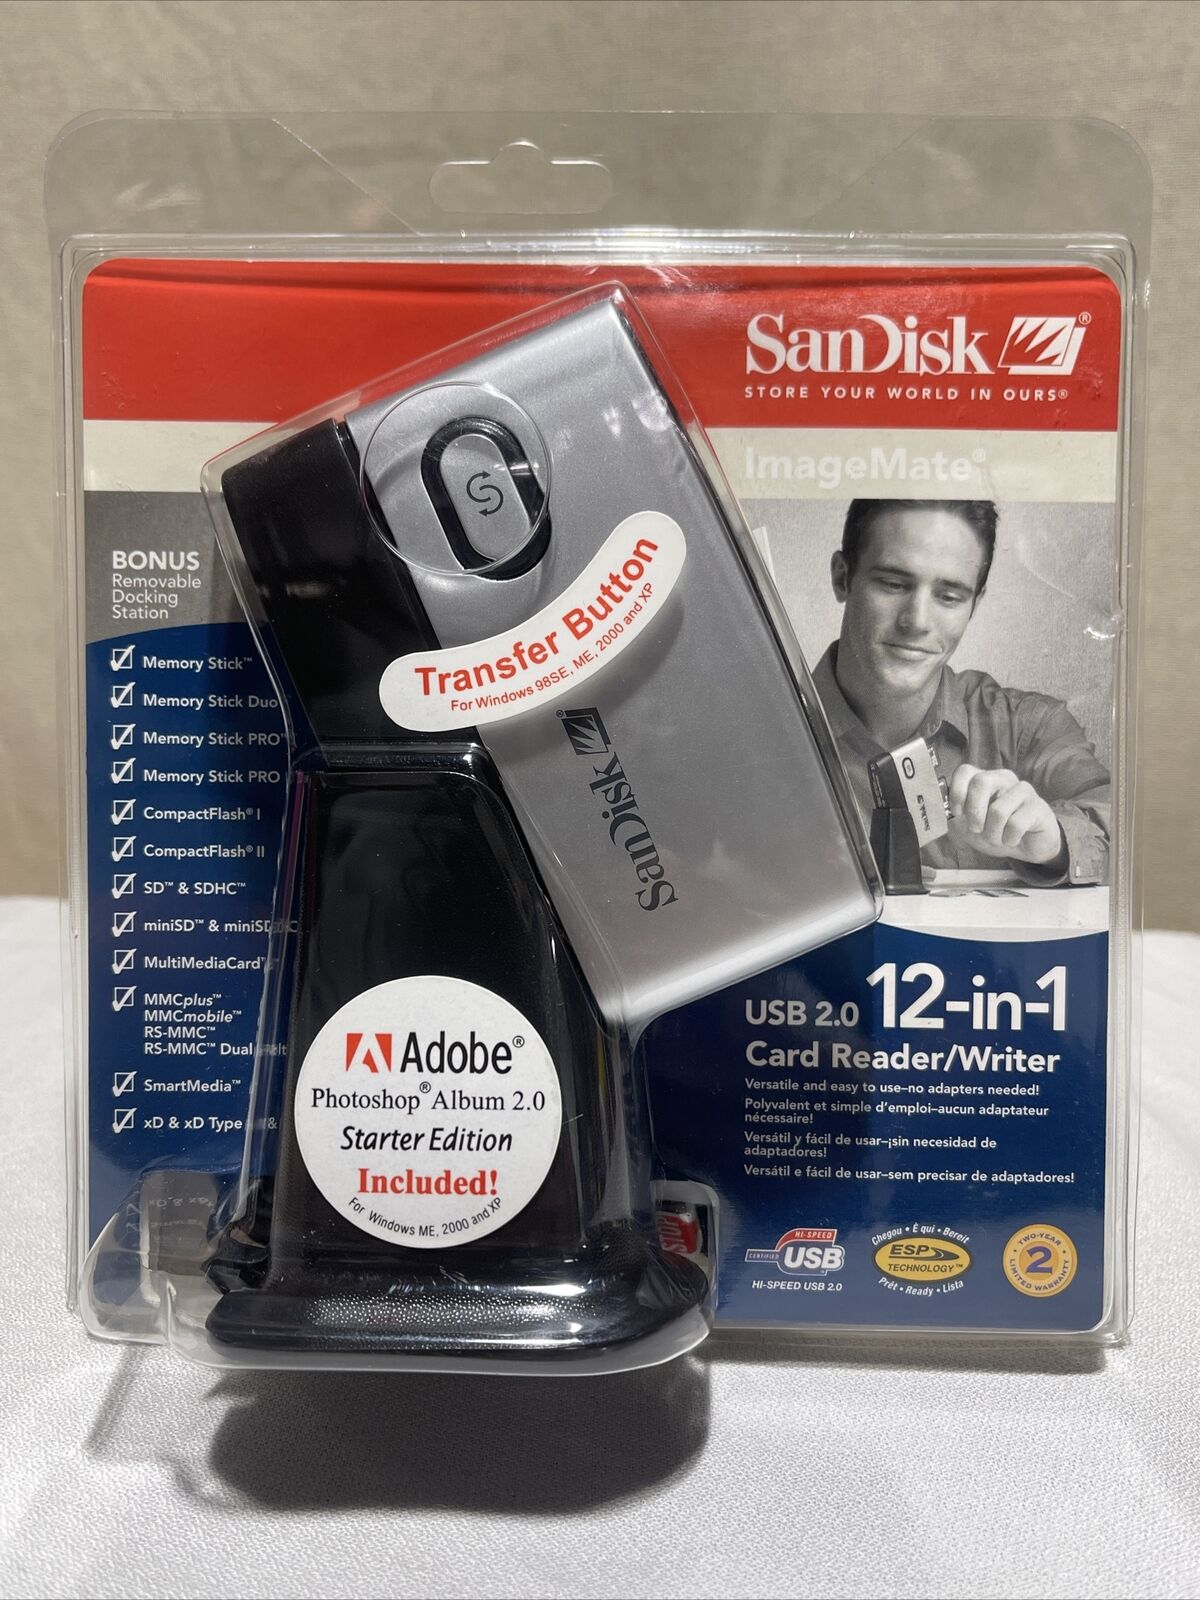 SanDisk ImageMate USB 2.0  12-in-1 Card Reader